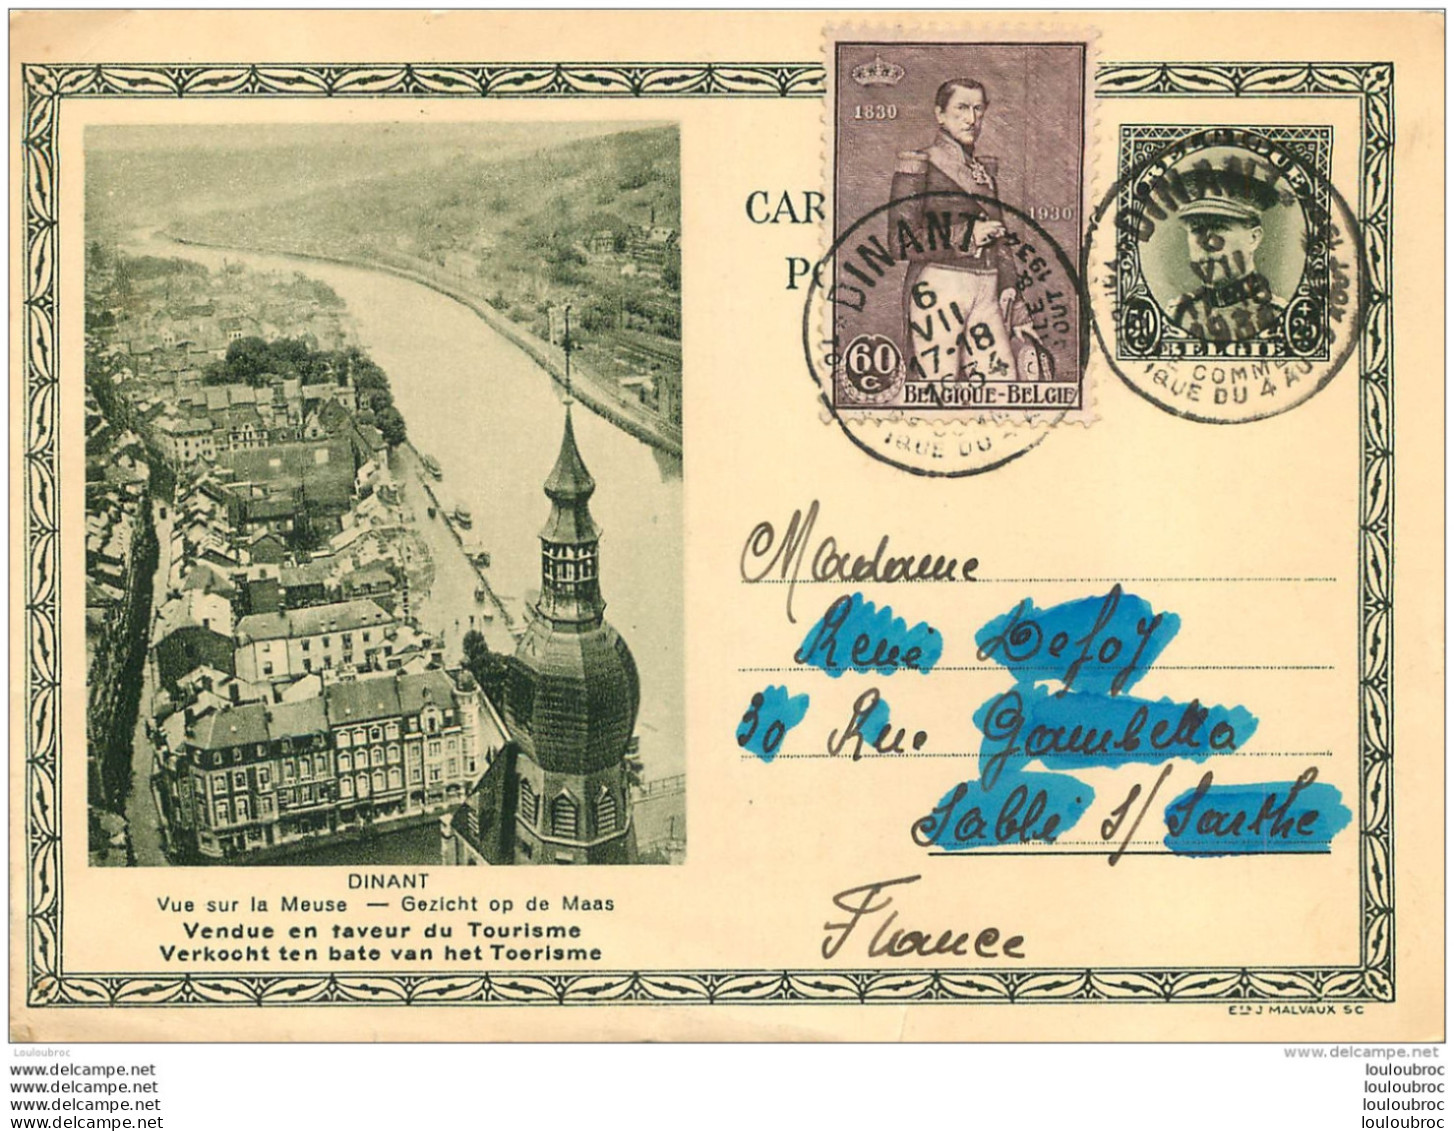 DINANT VUE SUR LA MEUSE OBLITEREE A DINANT EN 1934 - Cartes Postales Illustrées (1971-2014) [BK]